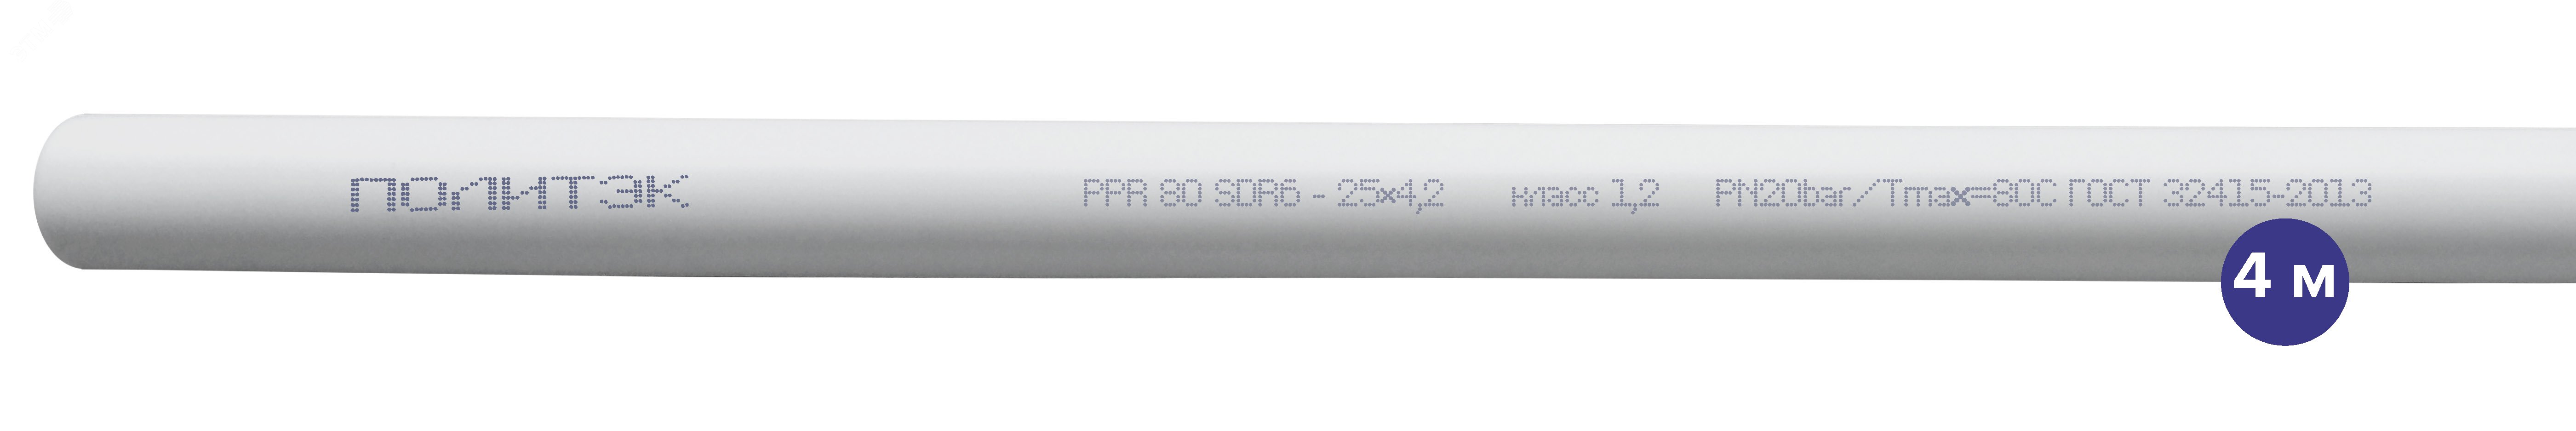 Труба полипропиленовая 25 х 4.2 SDR 6 PN 20 PPR белая, хлыст 4м 9002025042 Политэк - превью 2